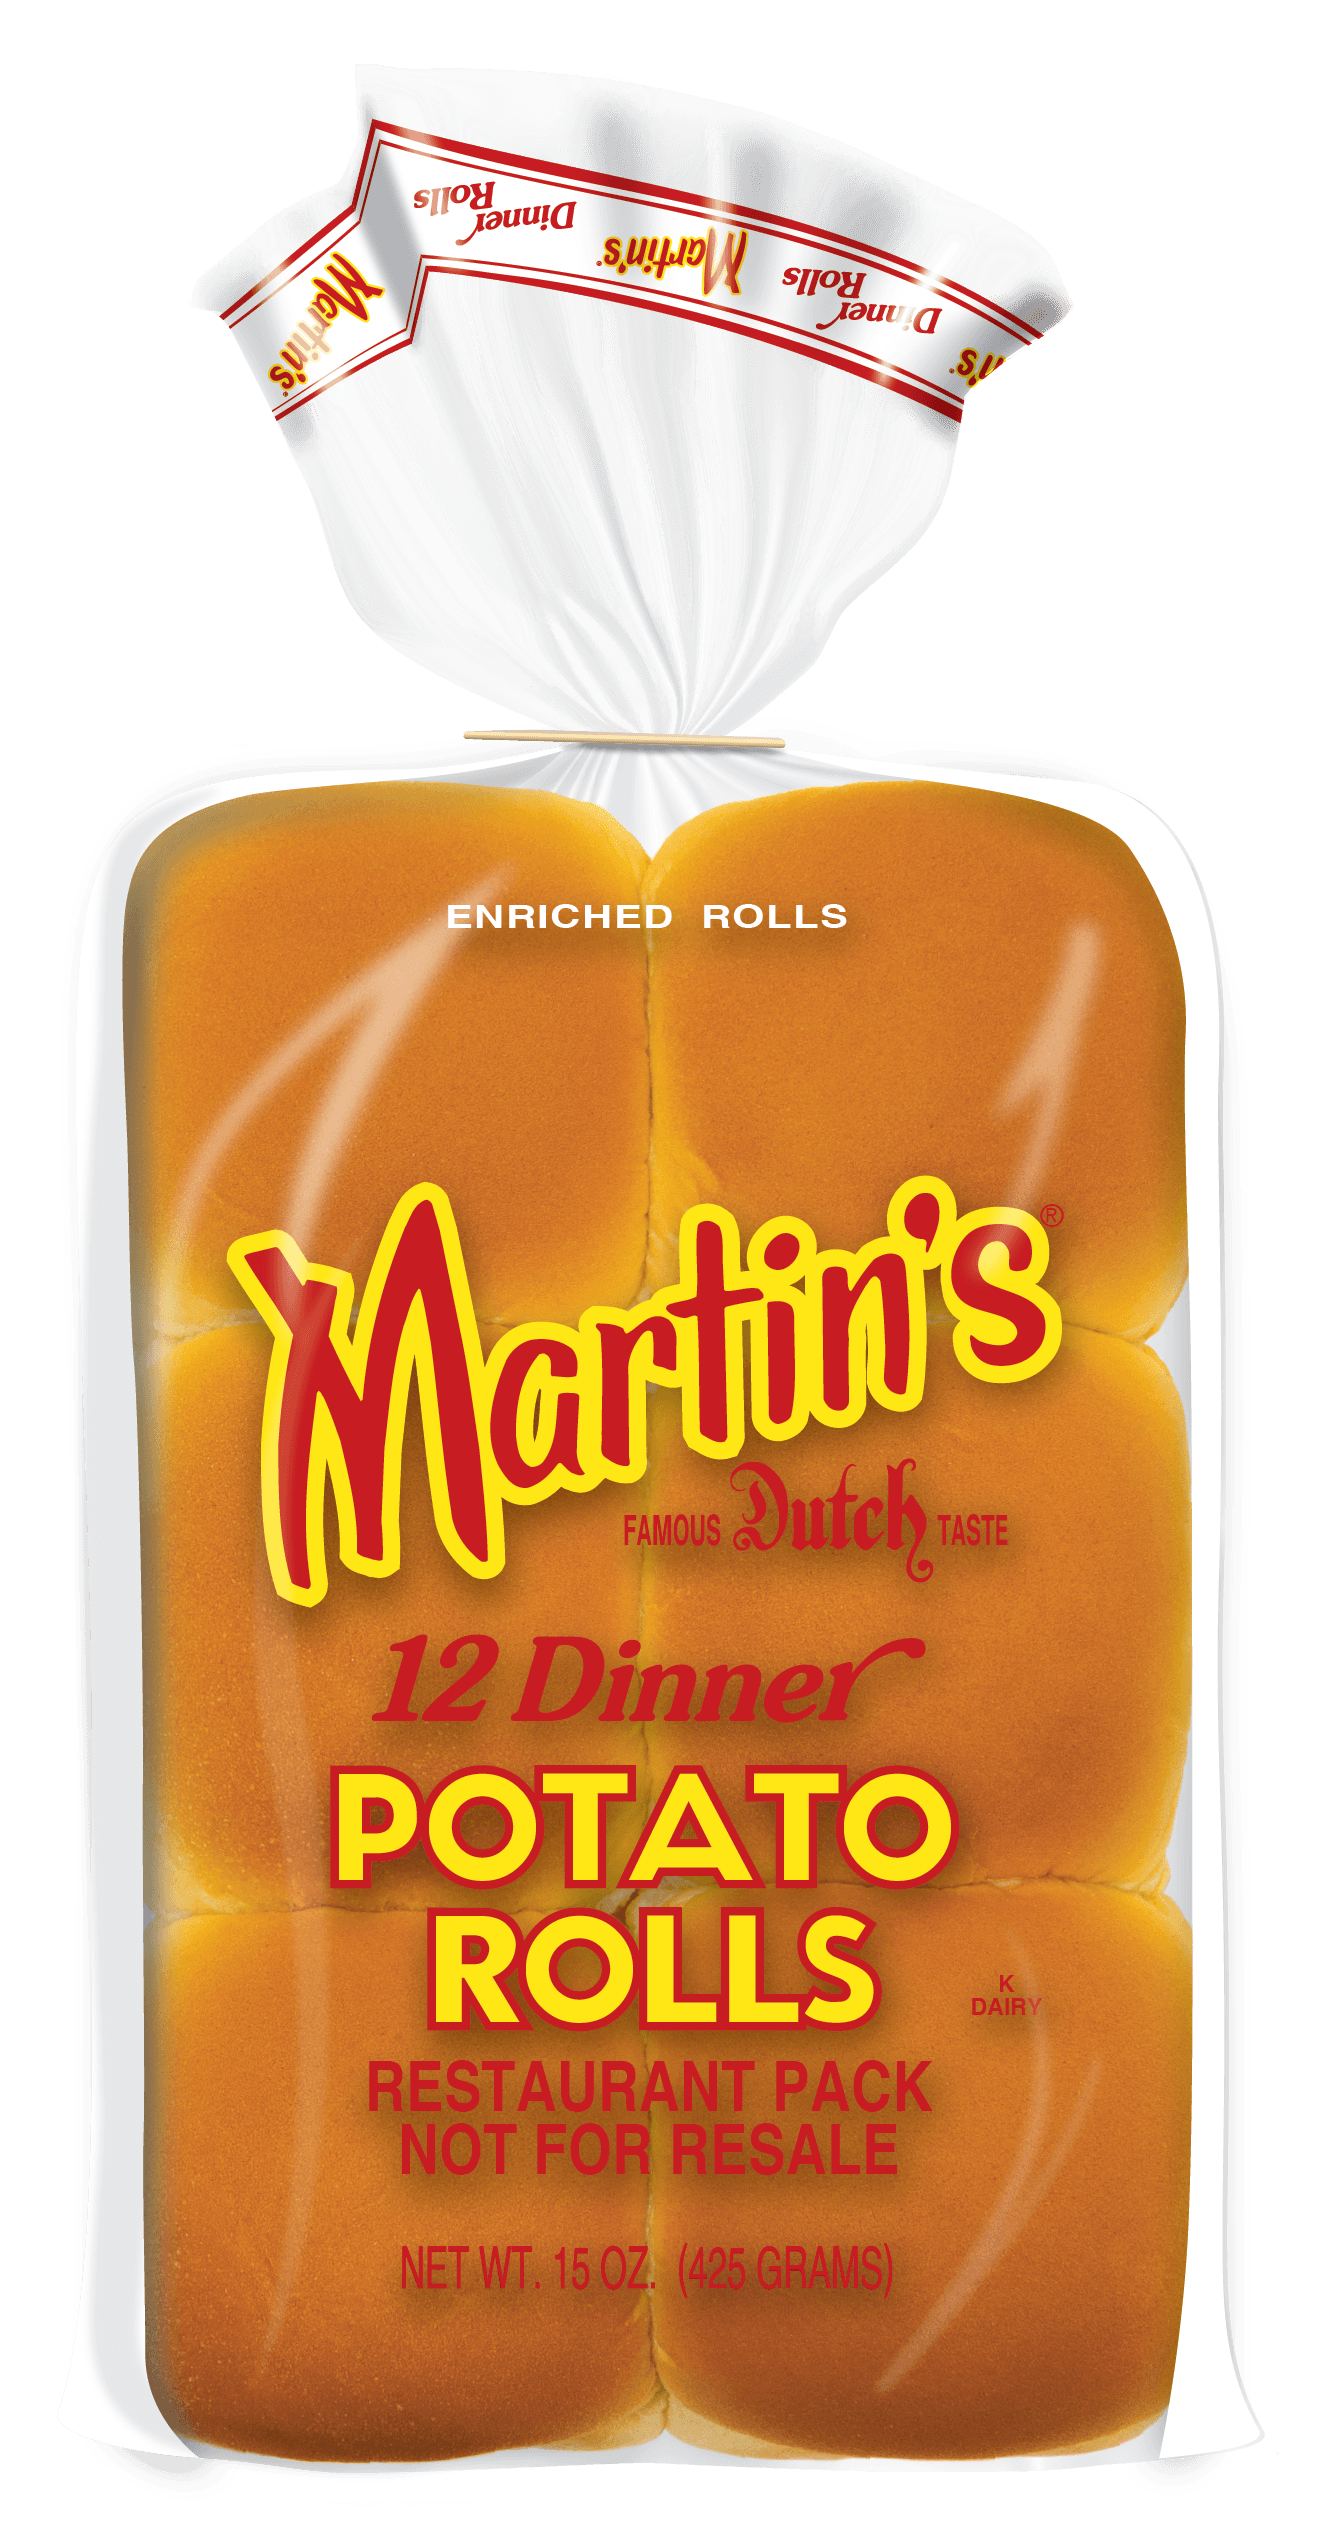 Martin's Dinner Potato Rolls - Institutional